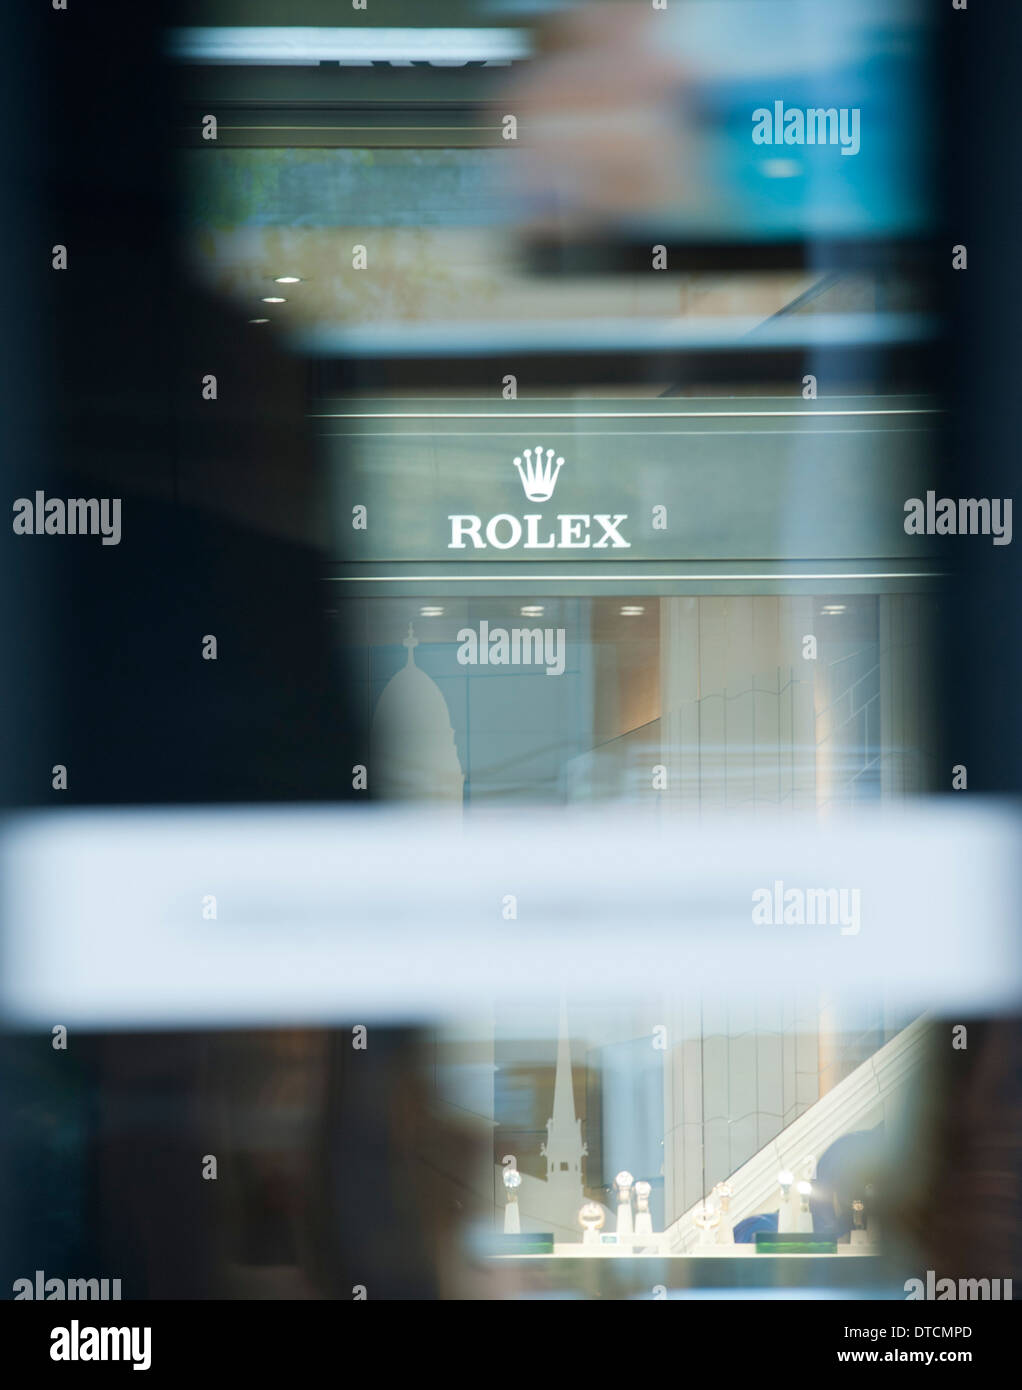 La vitrine d'une boutique de montres de luxe suisse Rolex sur la Bahnhofstrasse de Zurich est en train de disparaître derrière un tramway qui passe Banque D'Images